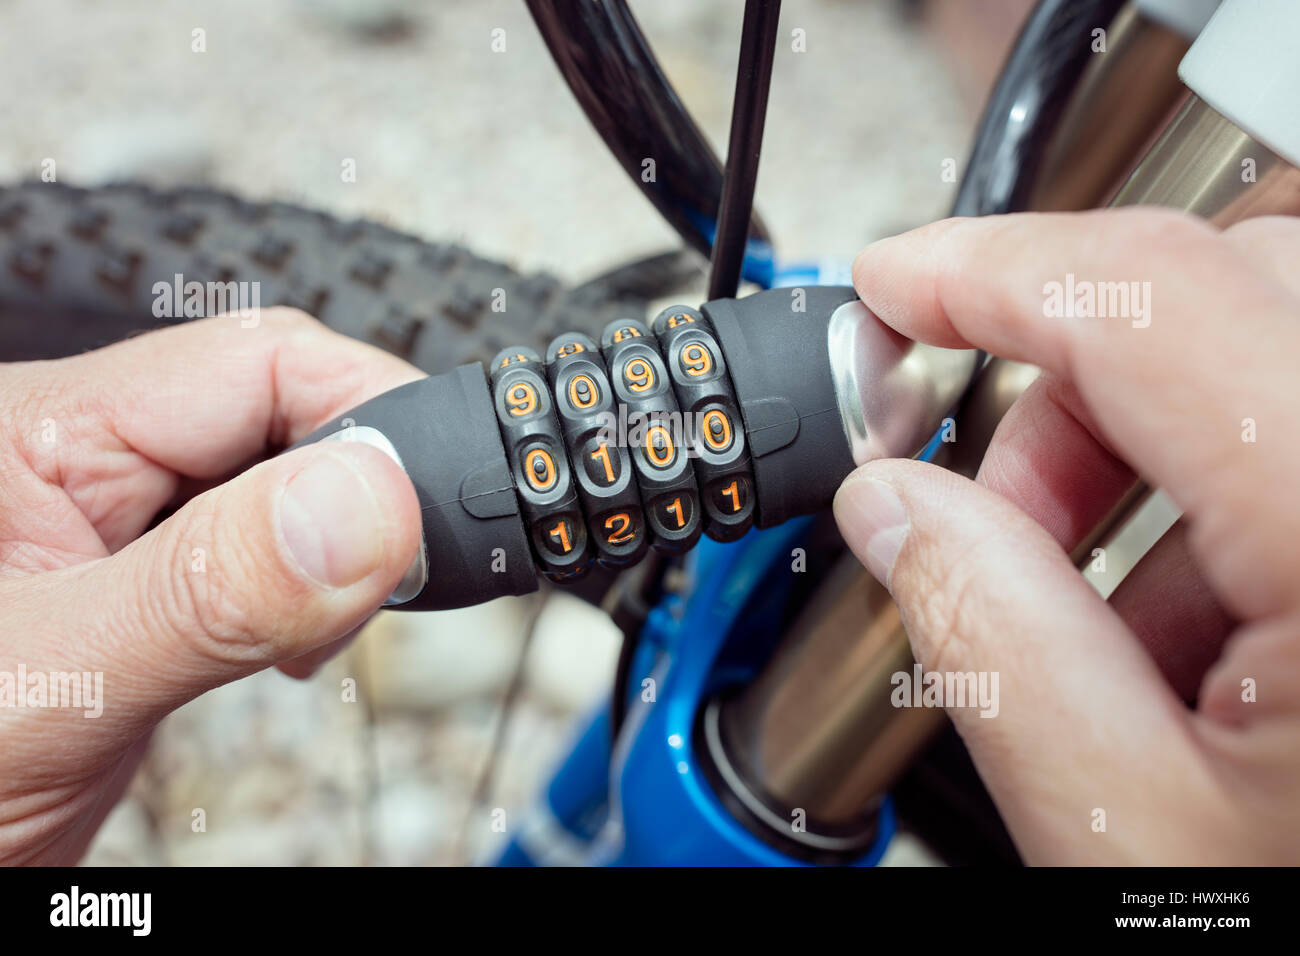 Serratura a combinazione accessorio bicicletta bici per la protezione e la sicurezza Foto Stock